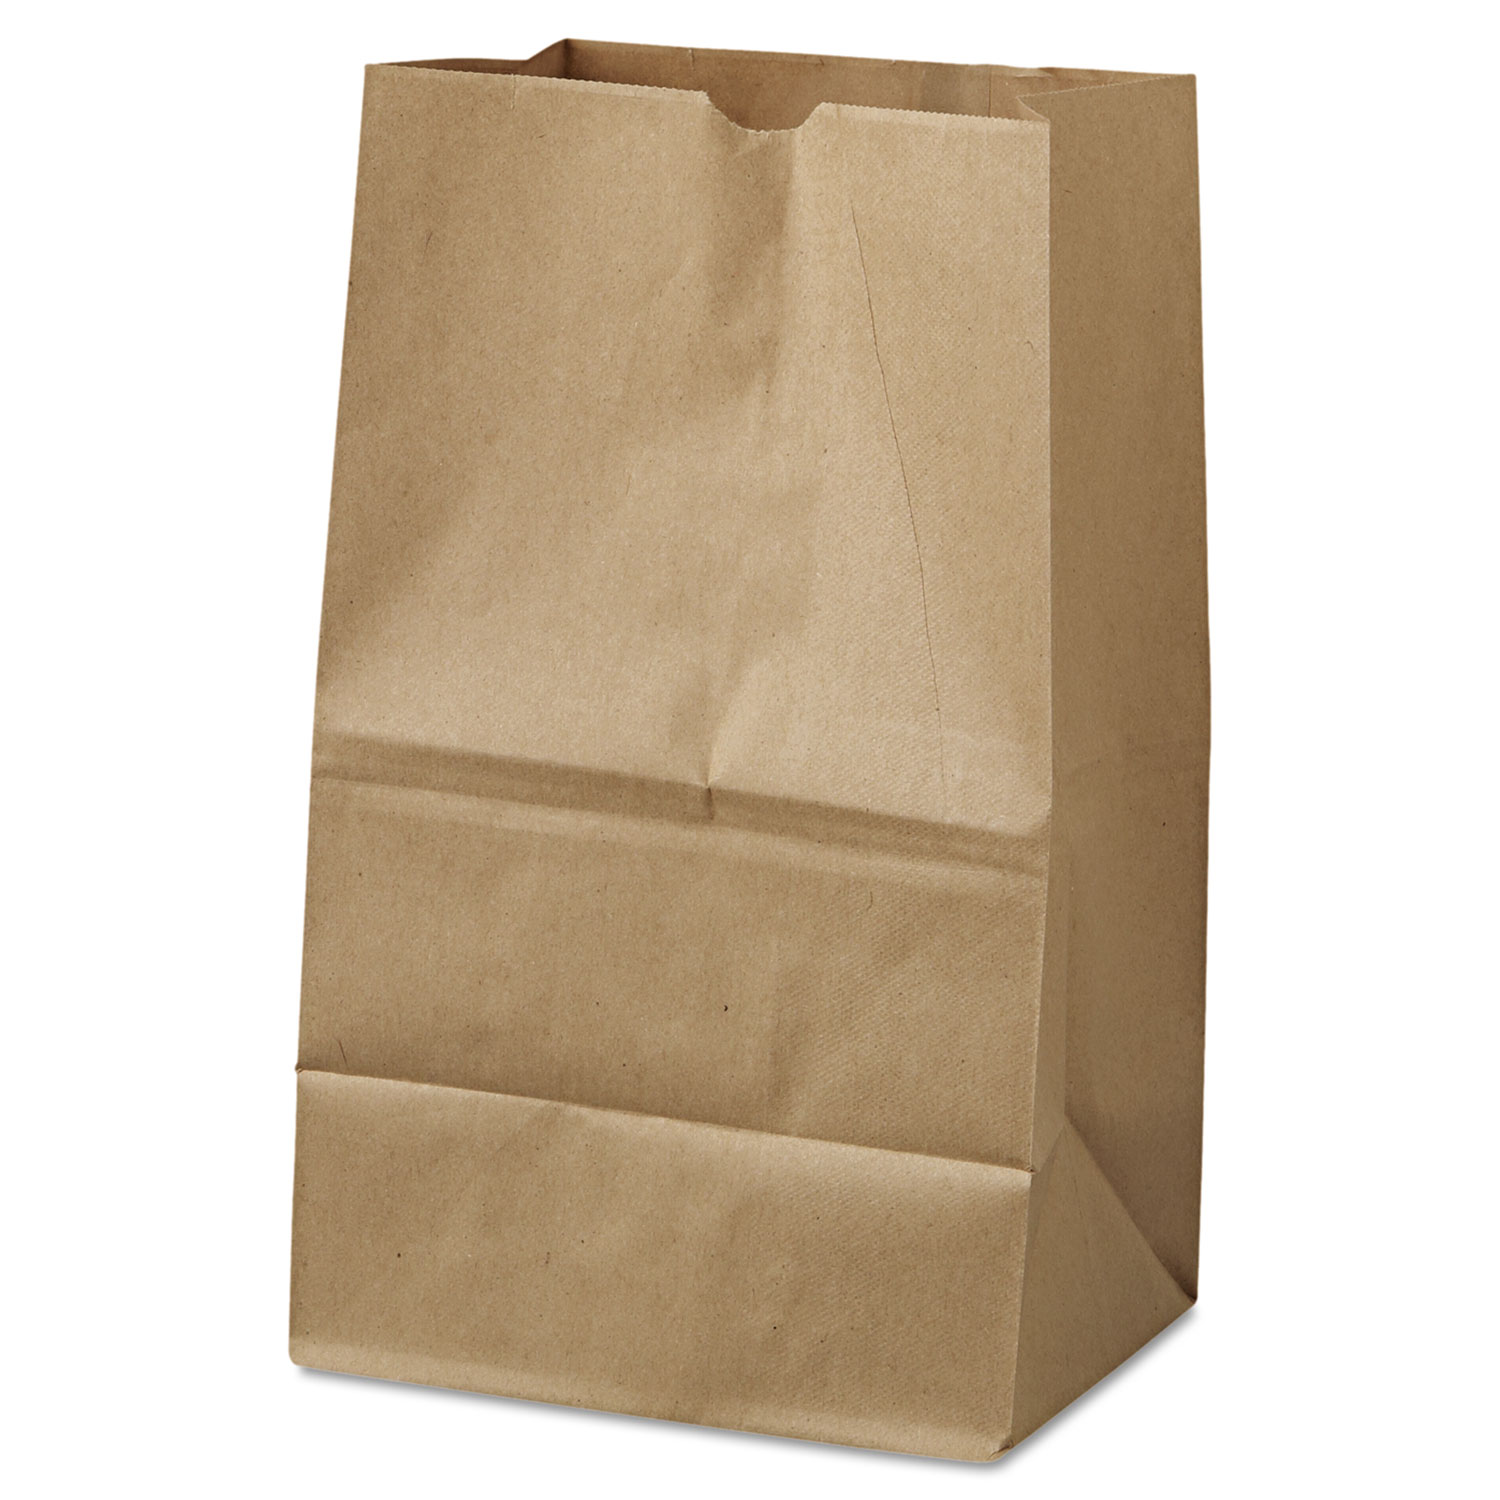  General 18421 Grocery Paper Bags, 40 lbs Capacity, #20 Squat, 8.25w x 5.94d x 13.38h, Kraft, 500 Bags (BAGGK20S500) 